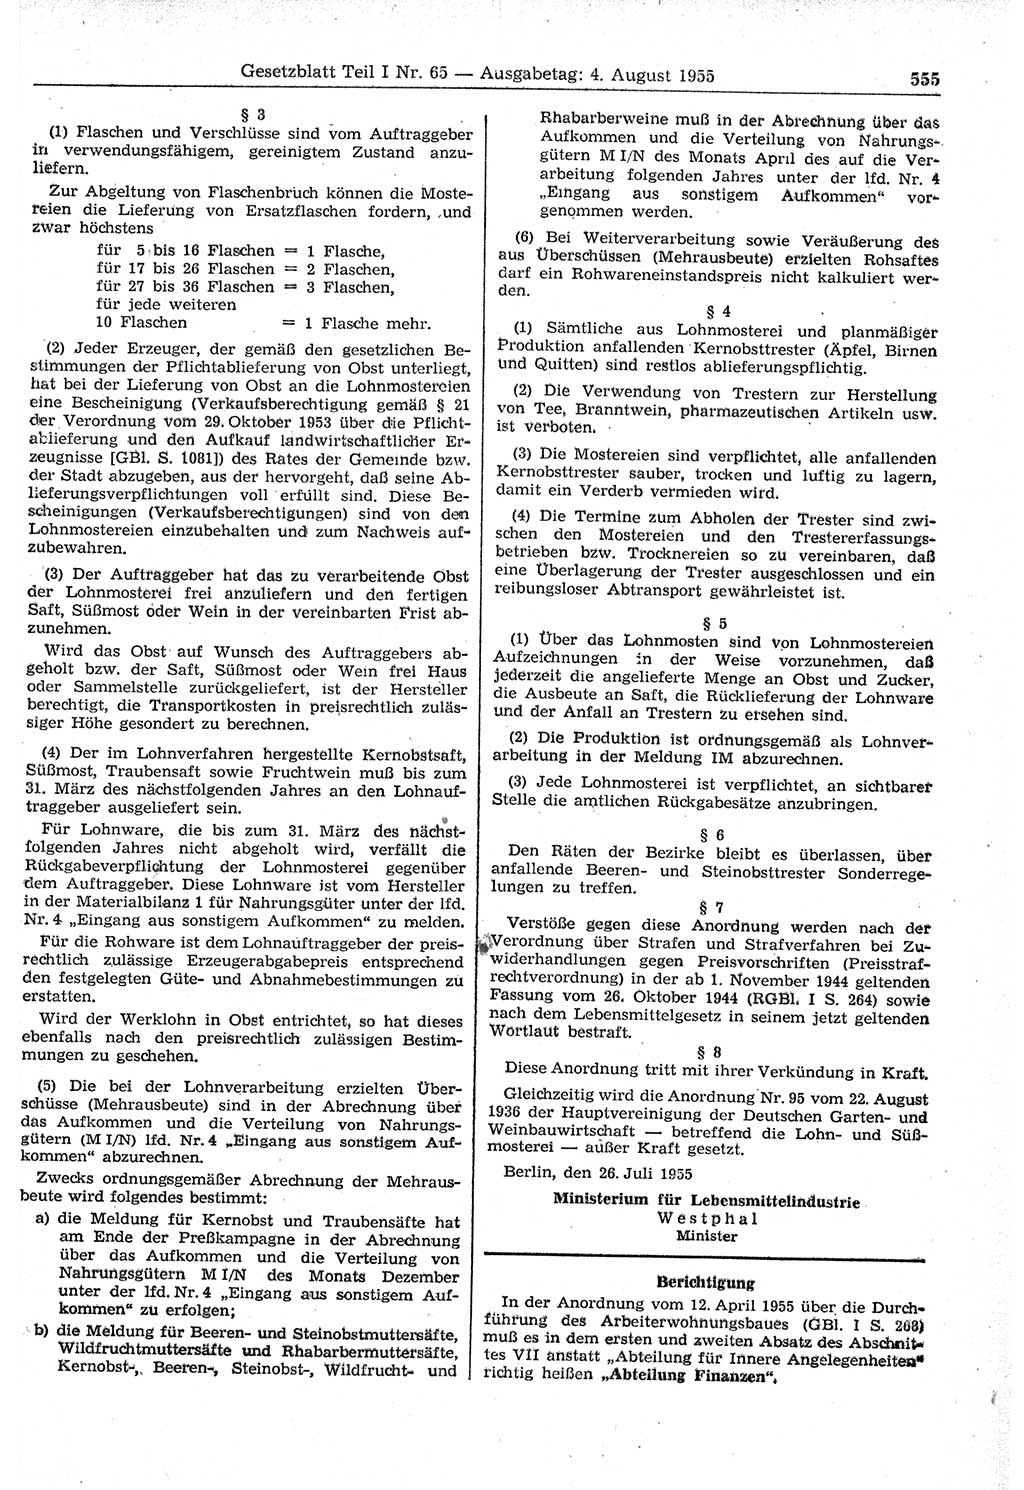 Gesetzblatt (GBl.) der Deutschen Demokratischen Republik (DDR) Teil Ⅰ 1955, Seite 555 (GBl. DDR Ⅰ 1955, S. 555)